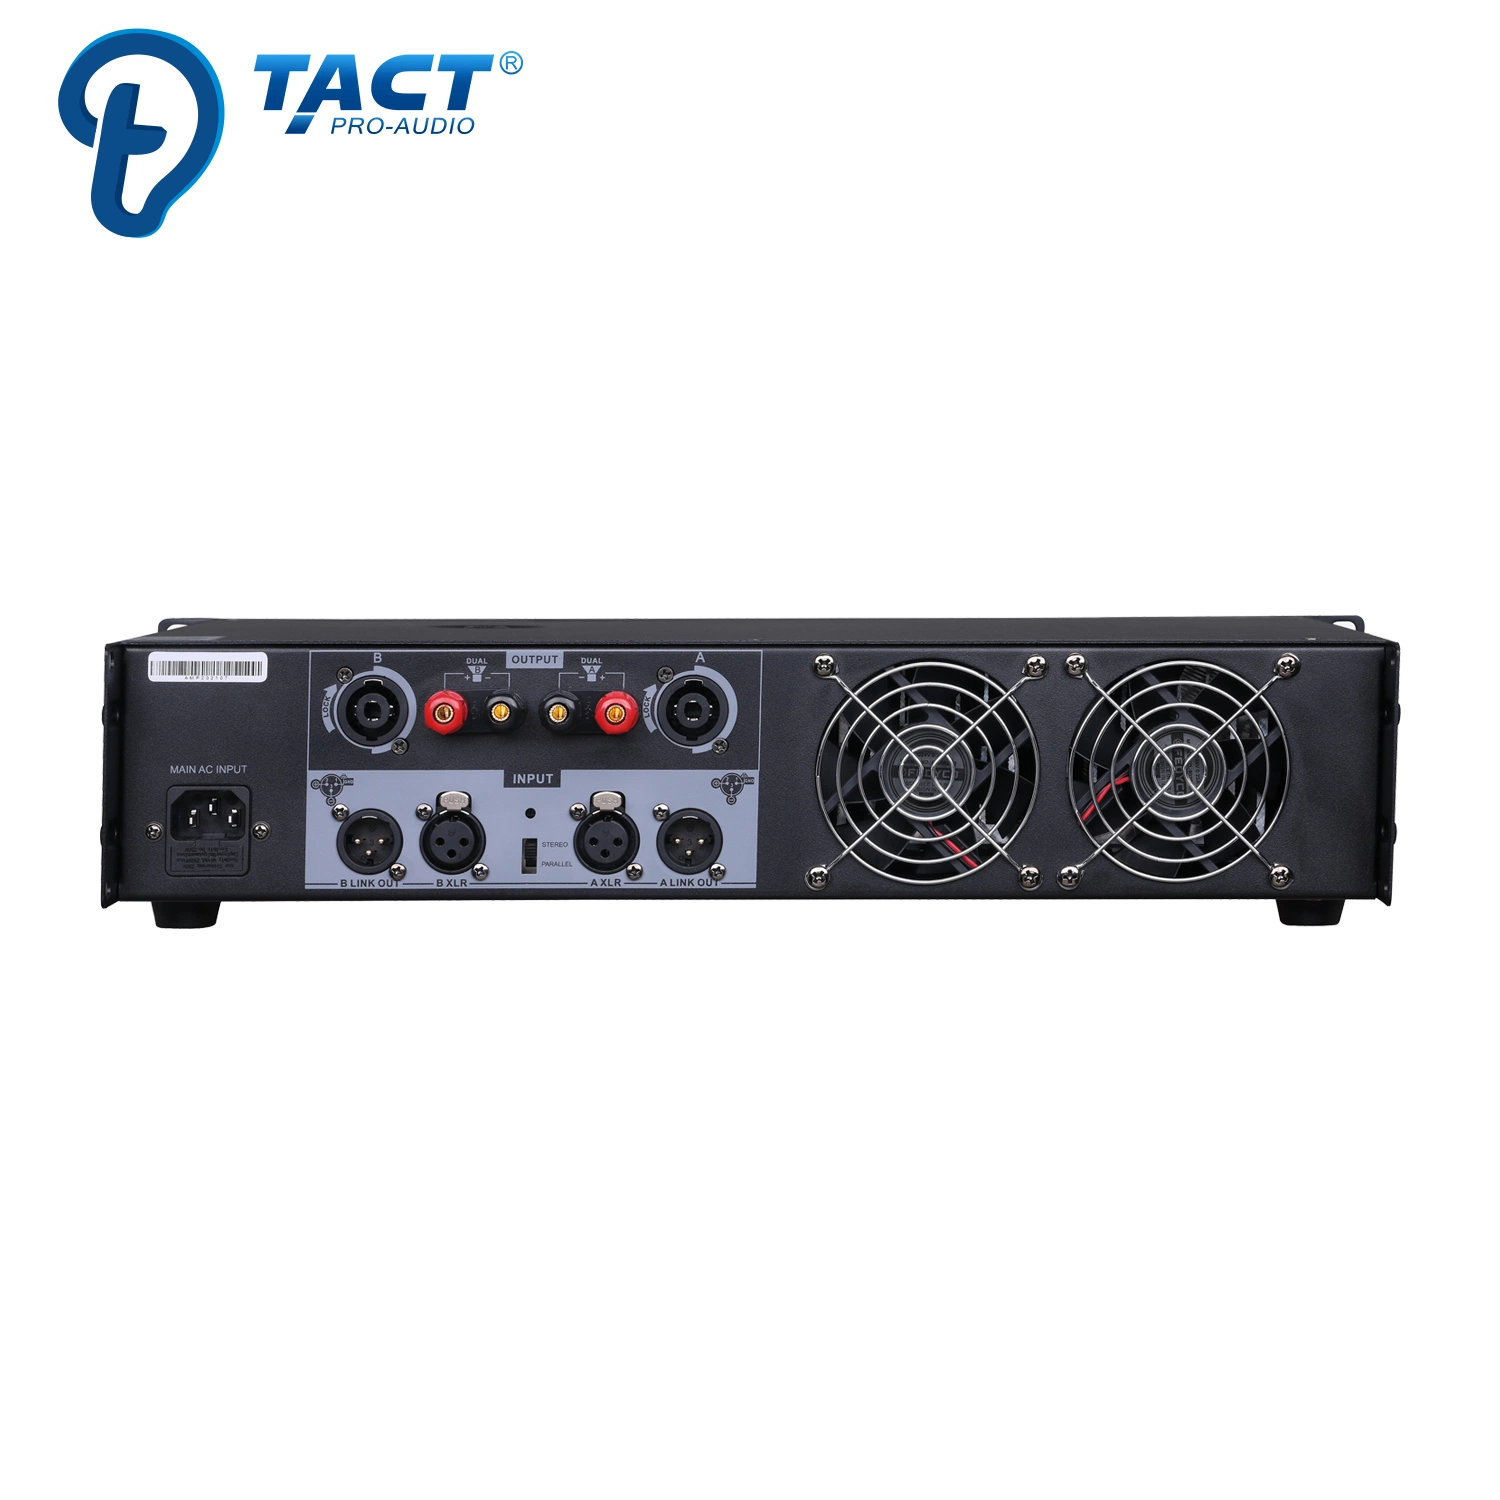 Ta800 Amplificadores de potencia de audio profesional, amplificador de sonido 1500W de alta potencia amplificador estéreo de DJ